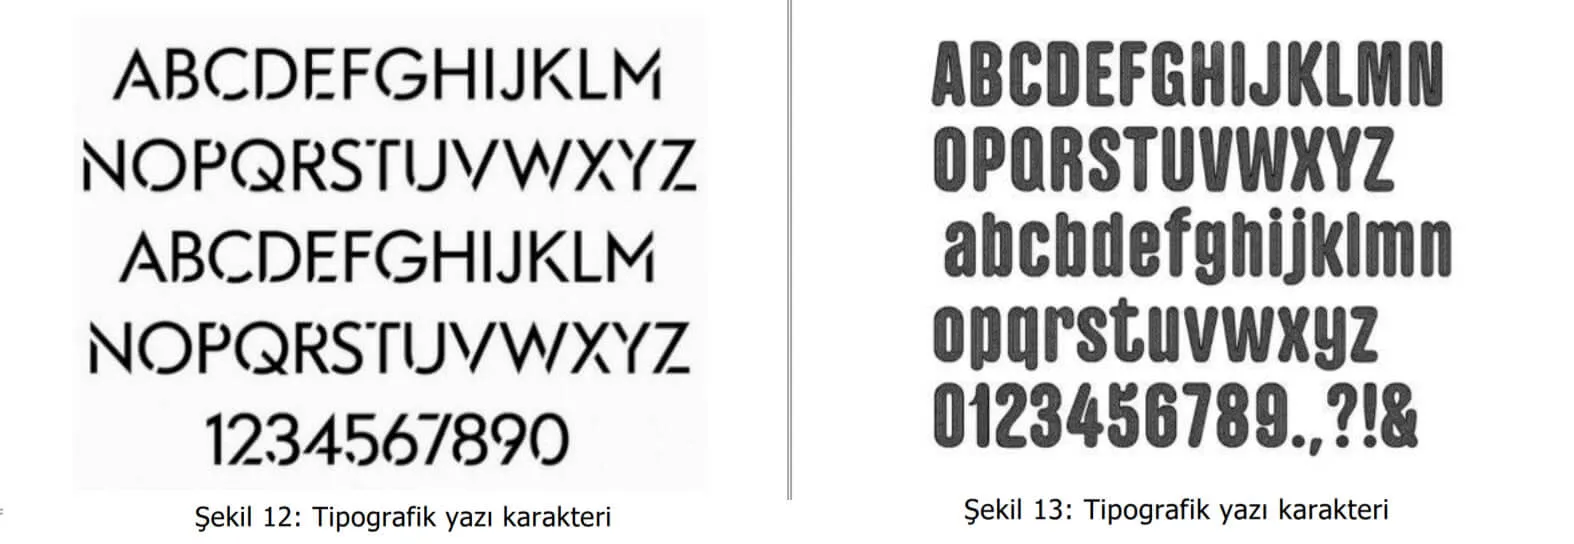 tipografik yazı karakter örnekleri-Manisa Patent